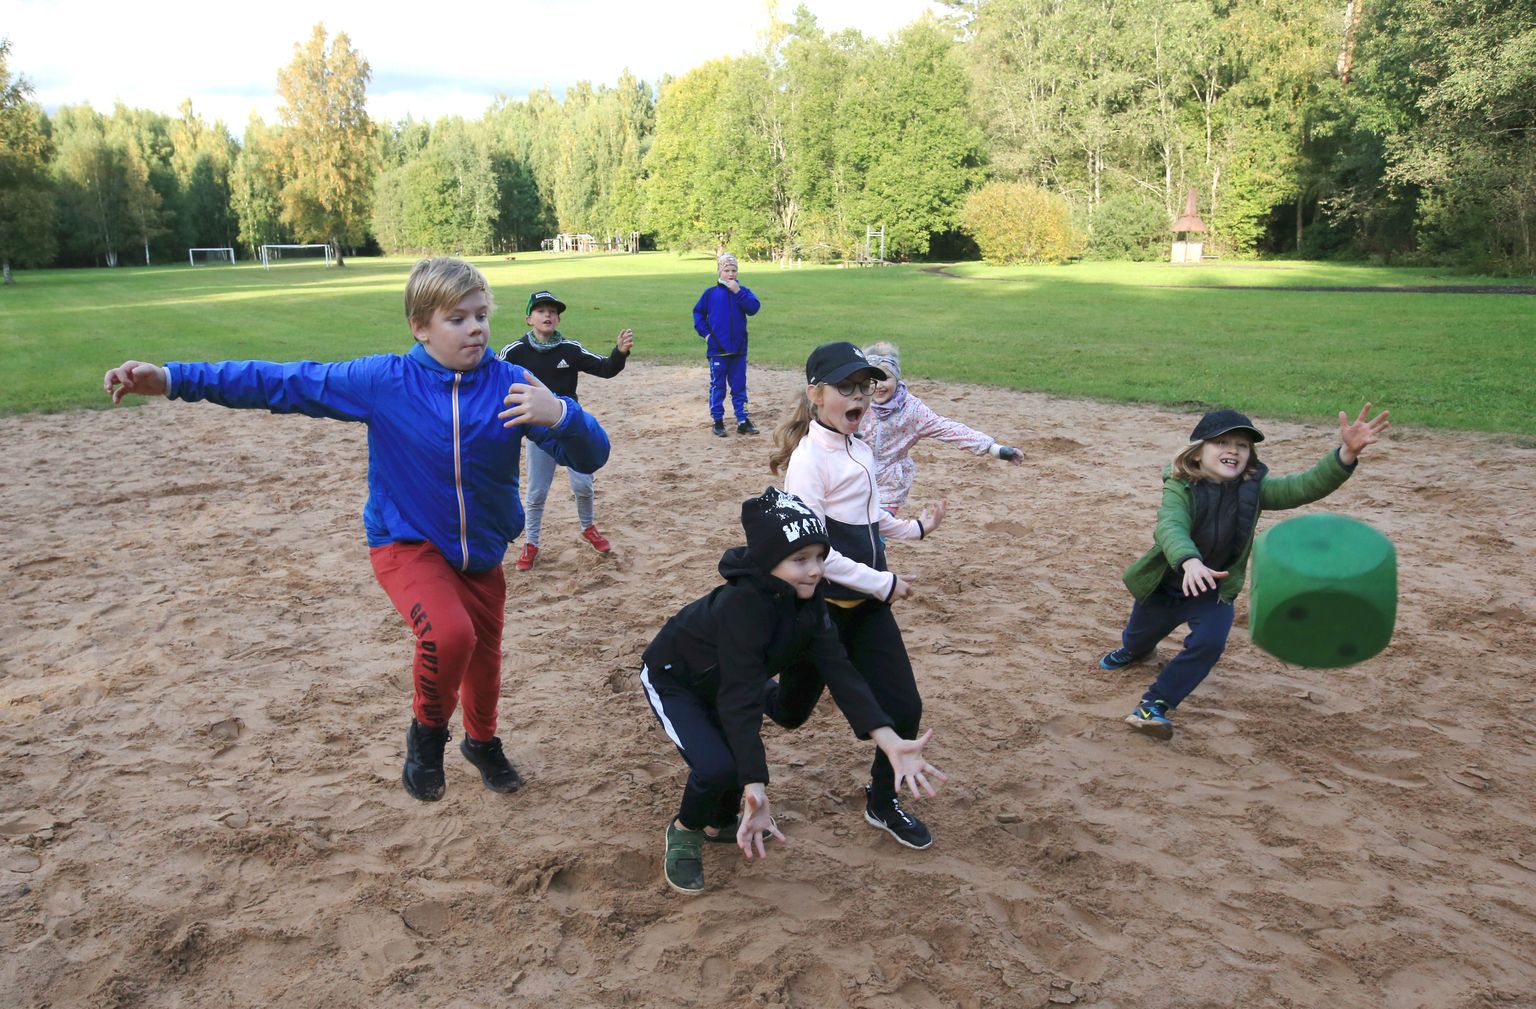 Lastega mängimine puhke- ja spordialal on hea võimalus aktiivseks aja veetmiseks värskes õhus.